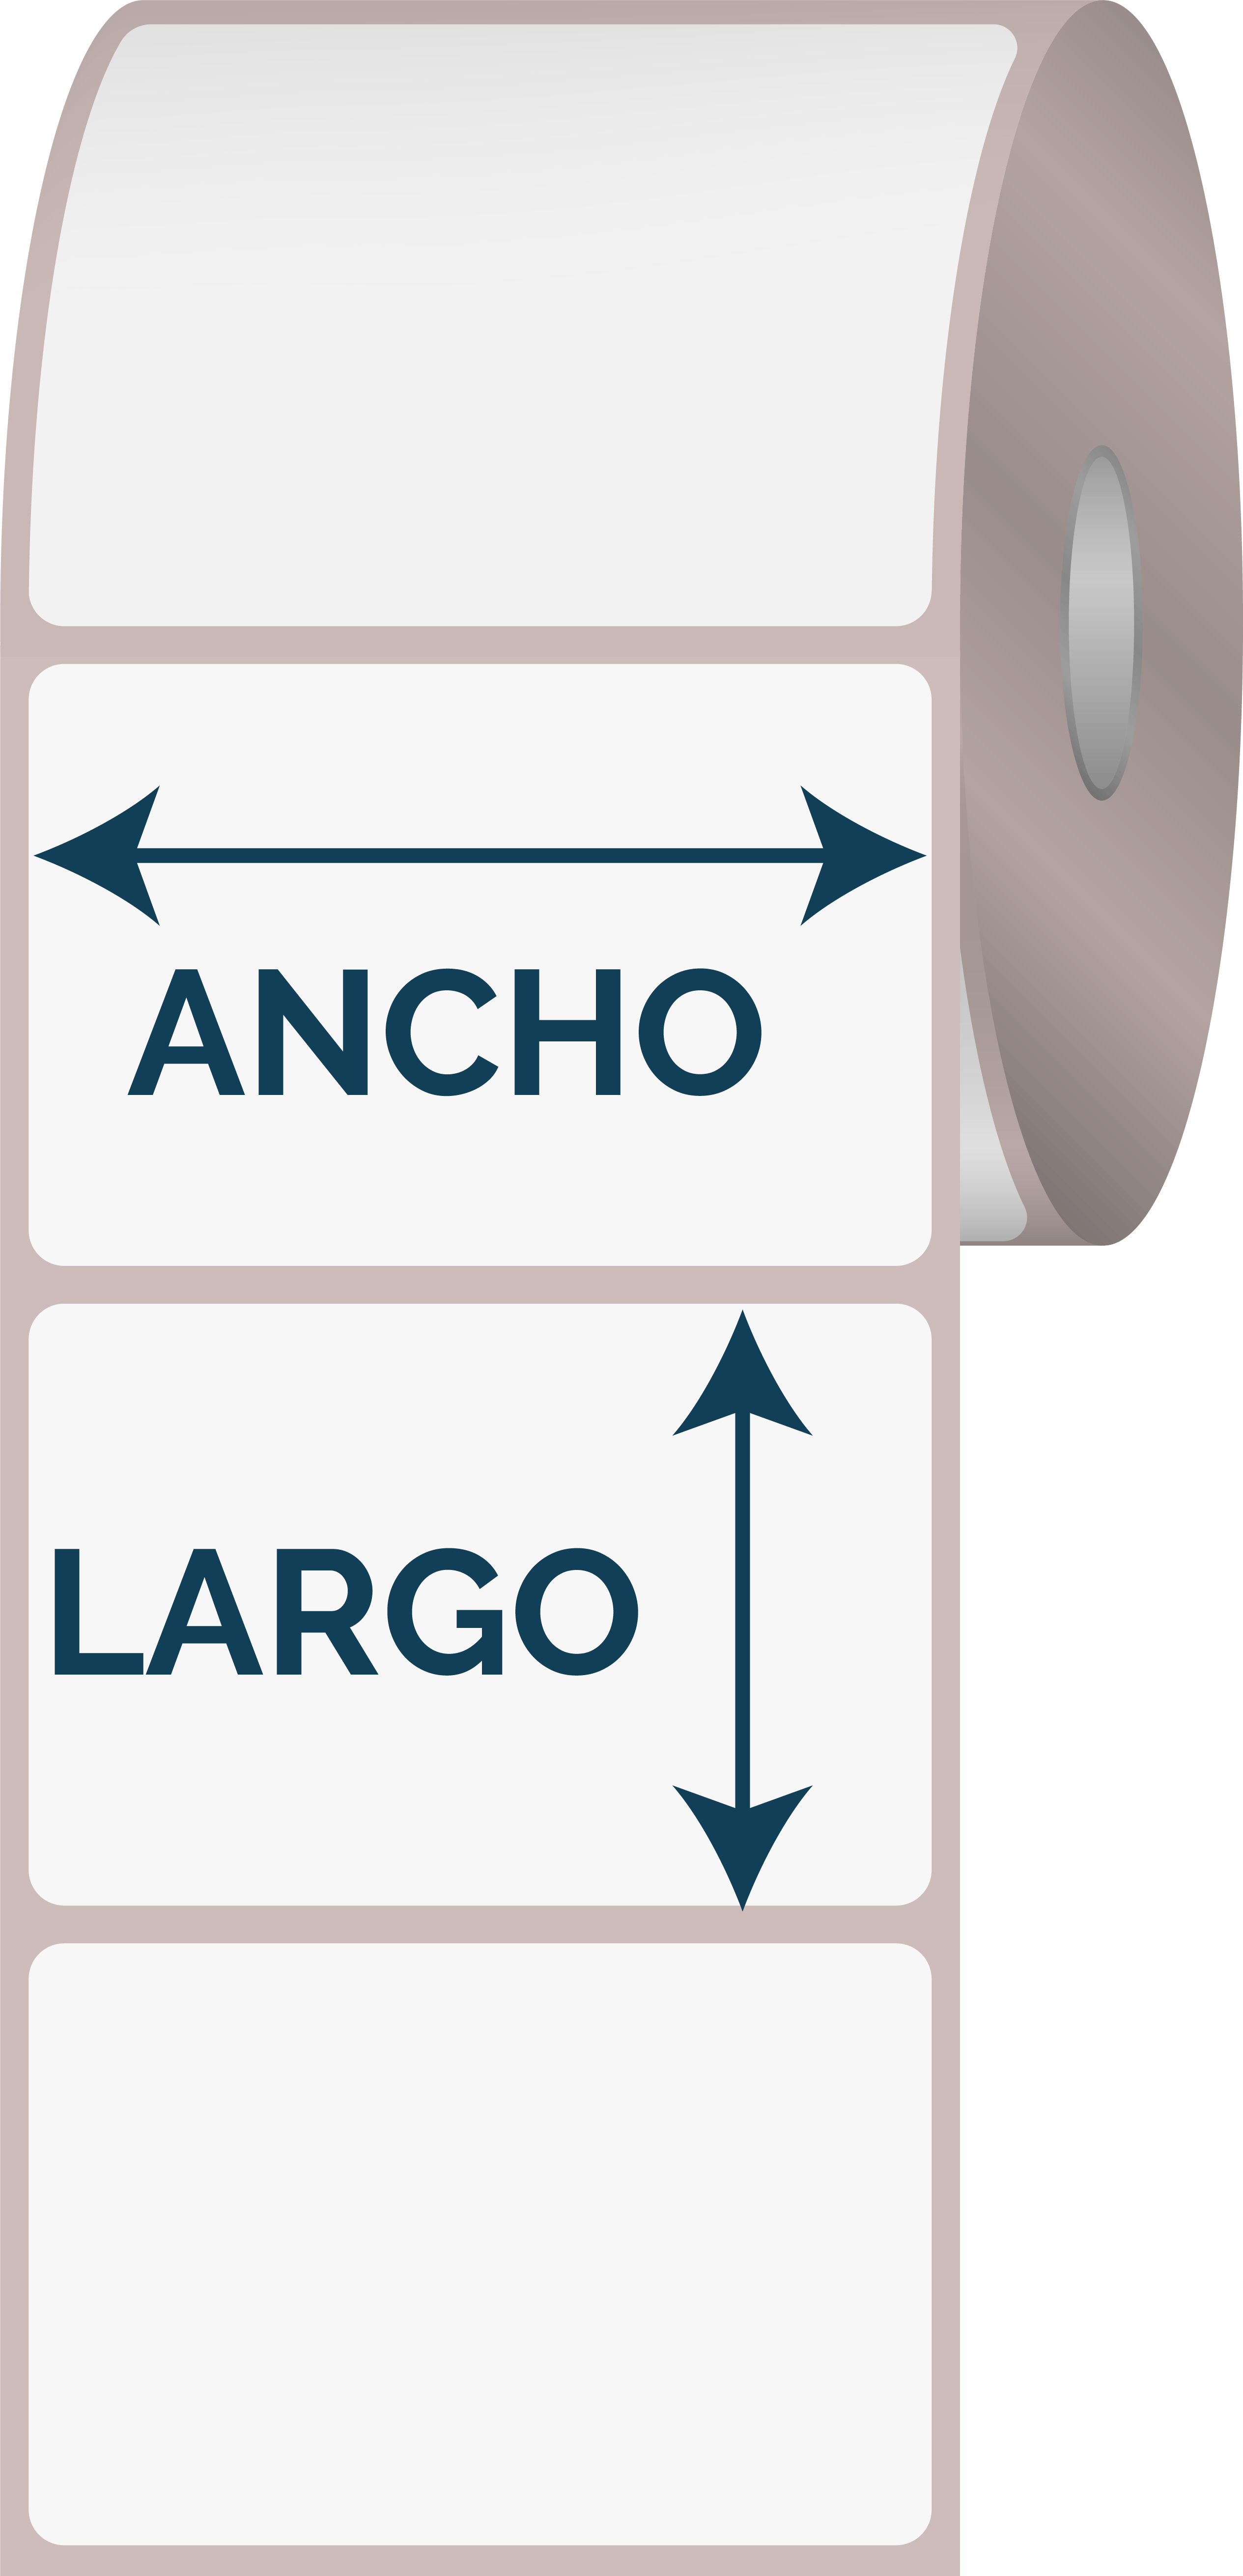 ANCHO Y LARGO